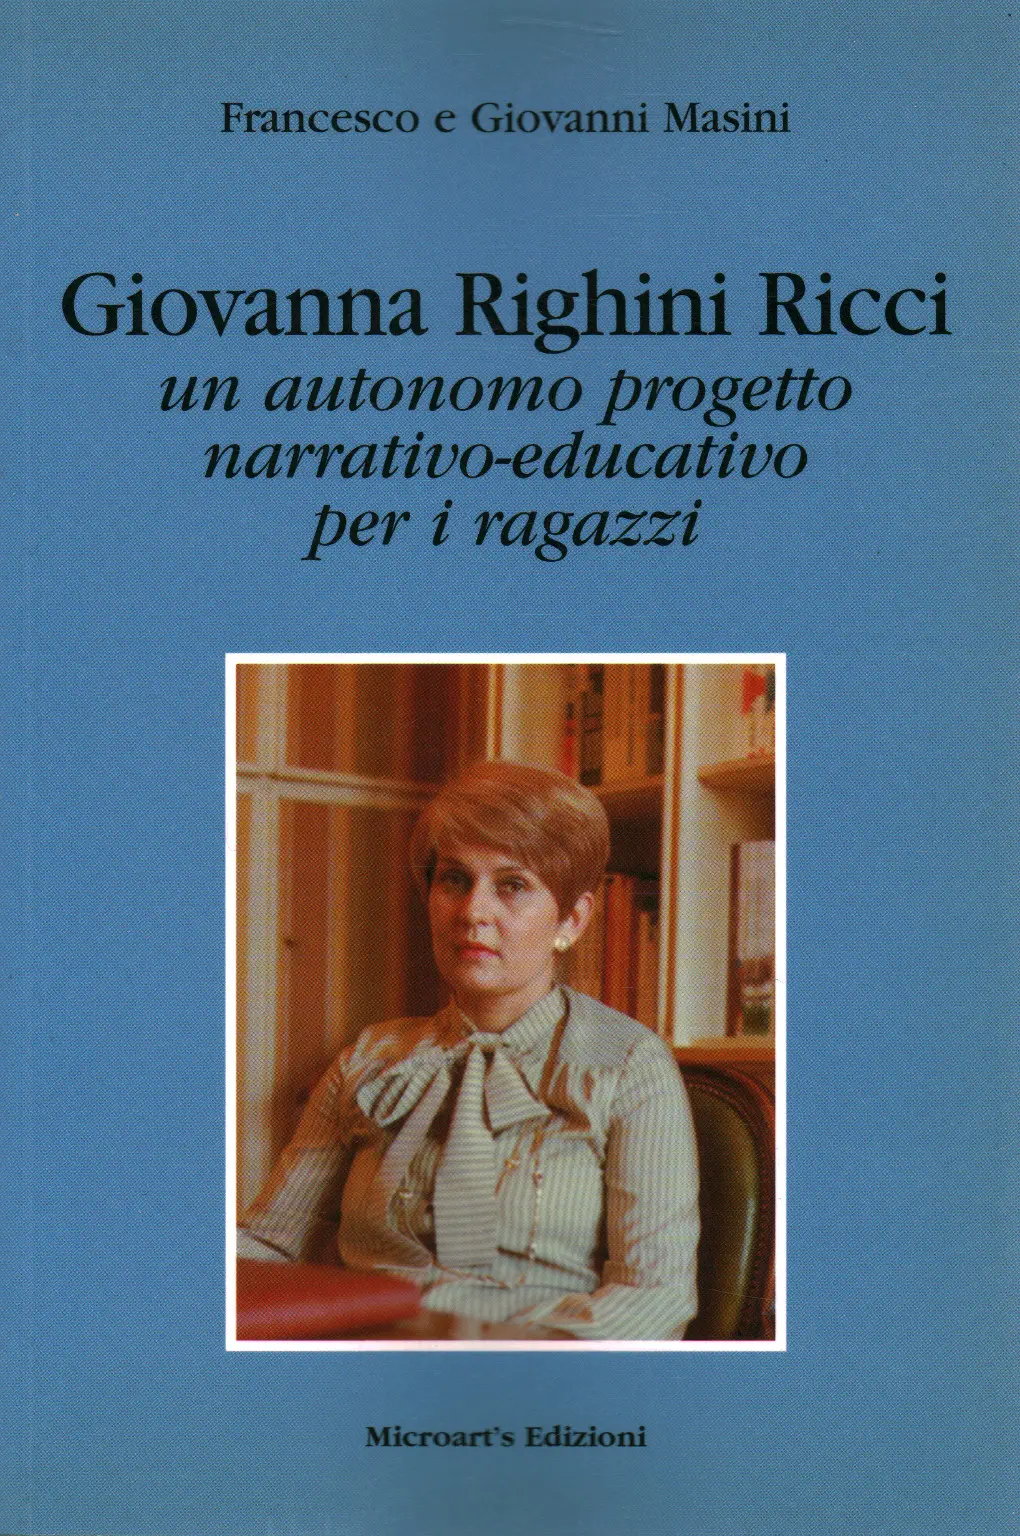 Francesco e Giovanni Masini, usato, Giovanna Righini Ricci, un autonomo  progetto narrativo-educativo, Libreria, Saggi di letteratura